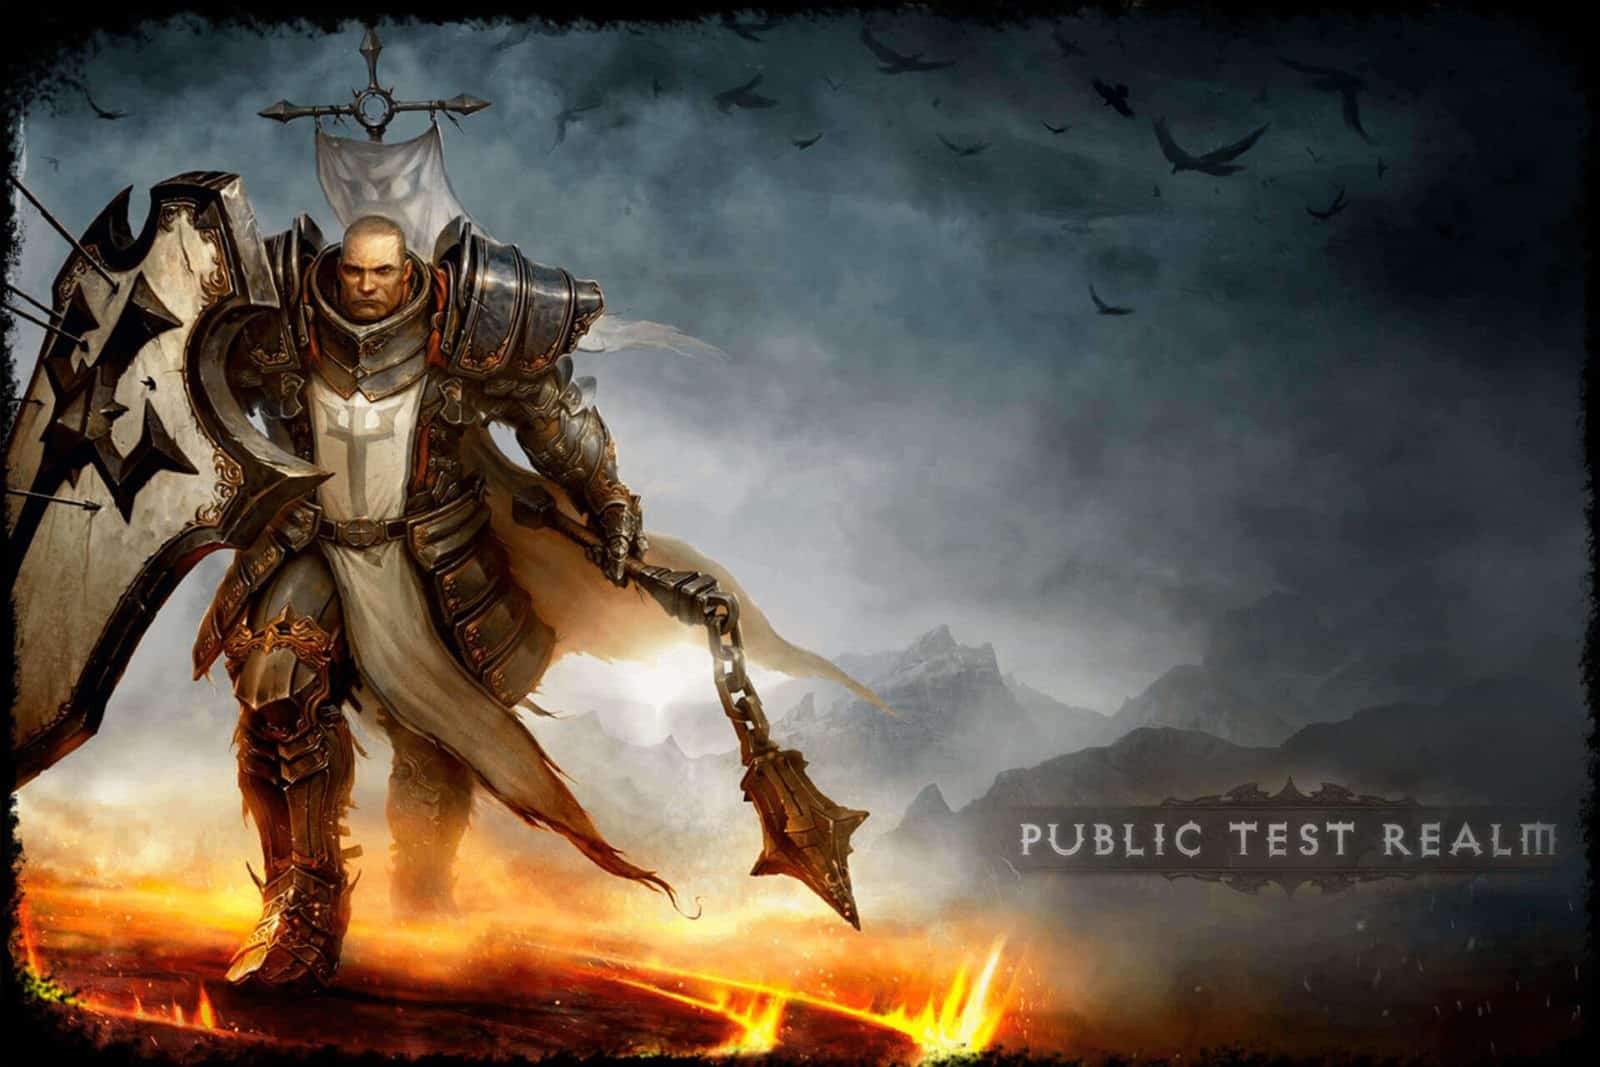 Diablo 3 Public Test Realm